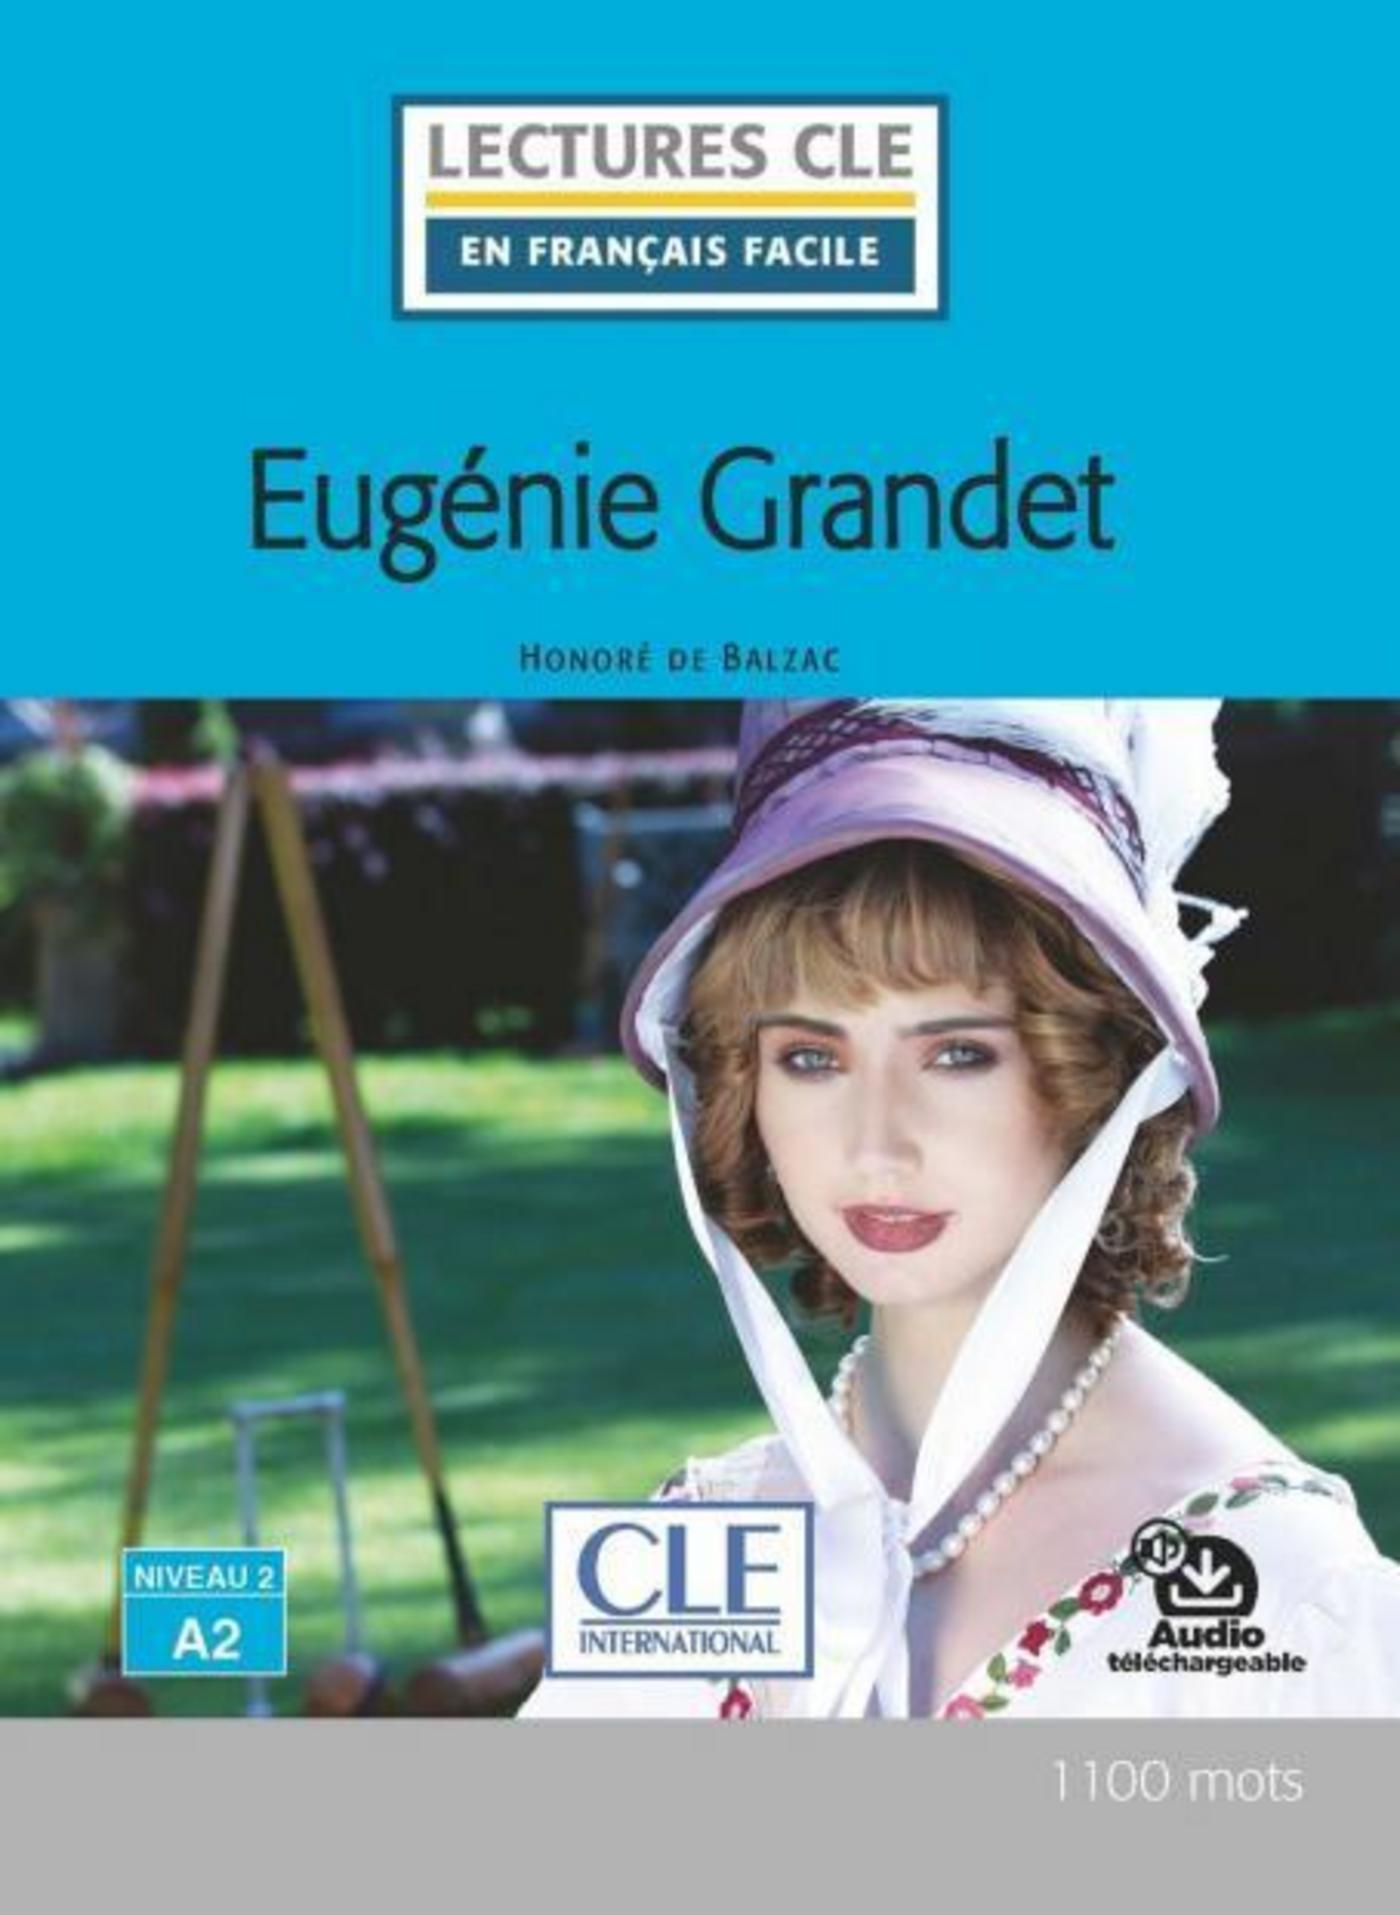 Ebook Eugénie Grandet - Niveau 2/A2 - Lecture CLE en français facile -  Ebook par Honoré De Balzac - 7Switch